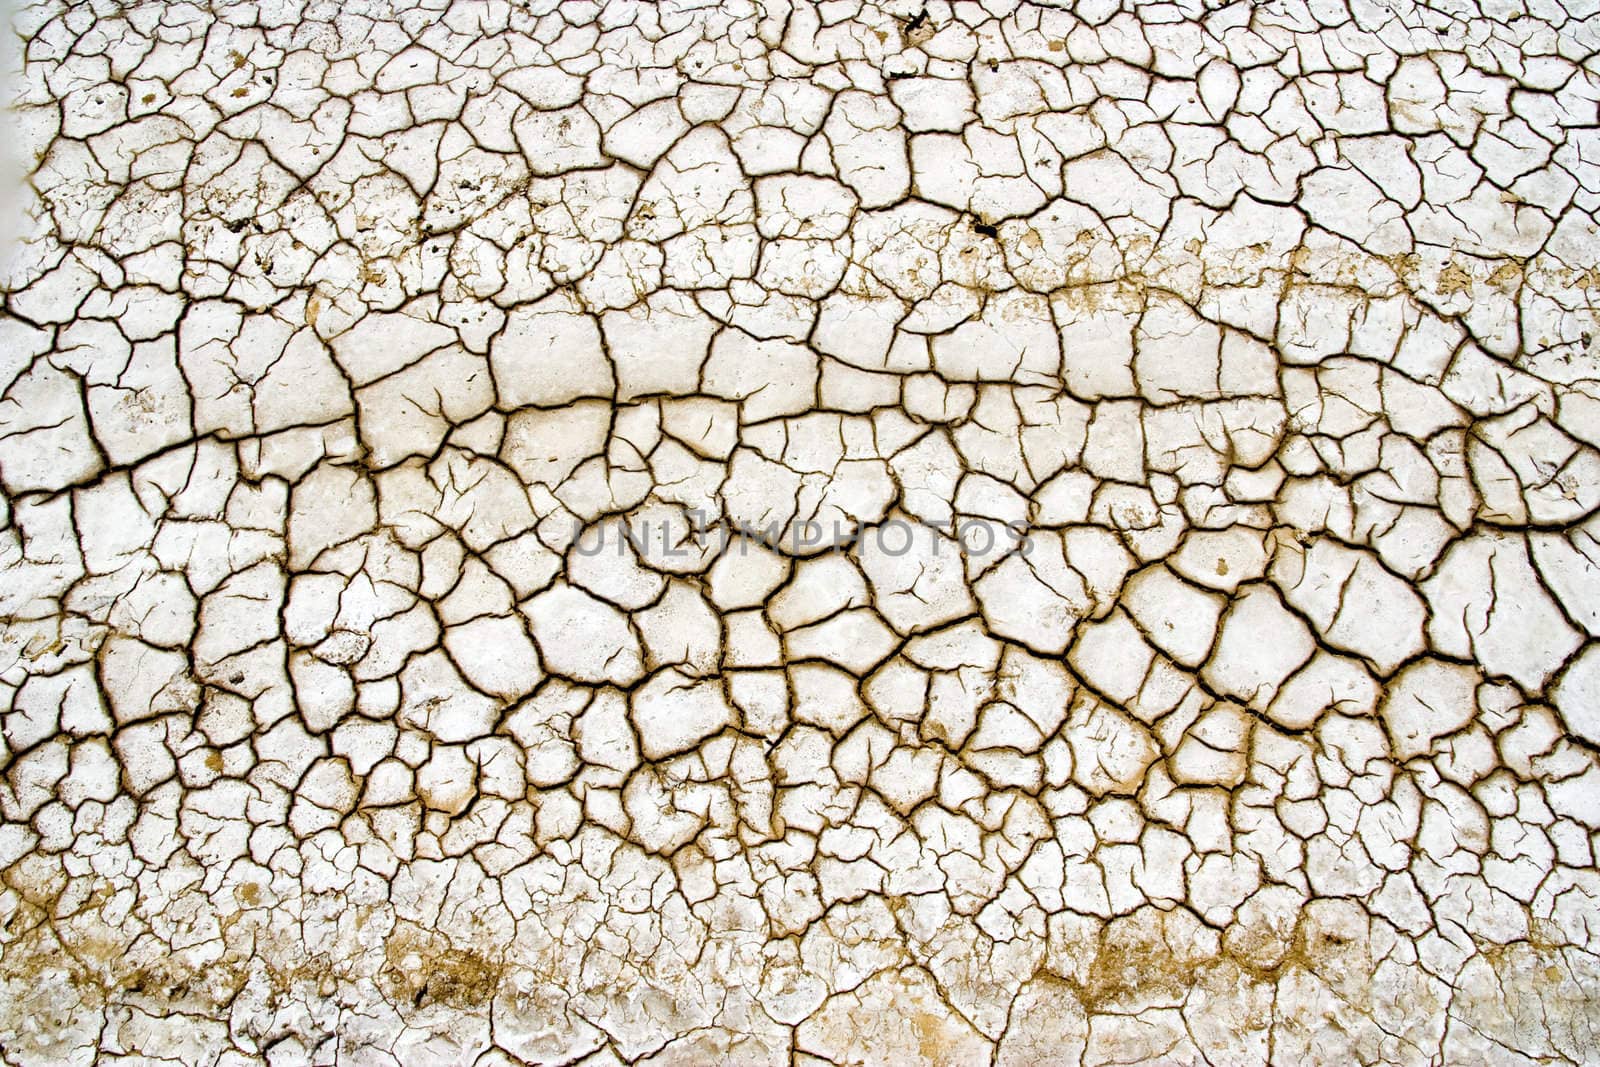 Dry Terrain by chrisroll